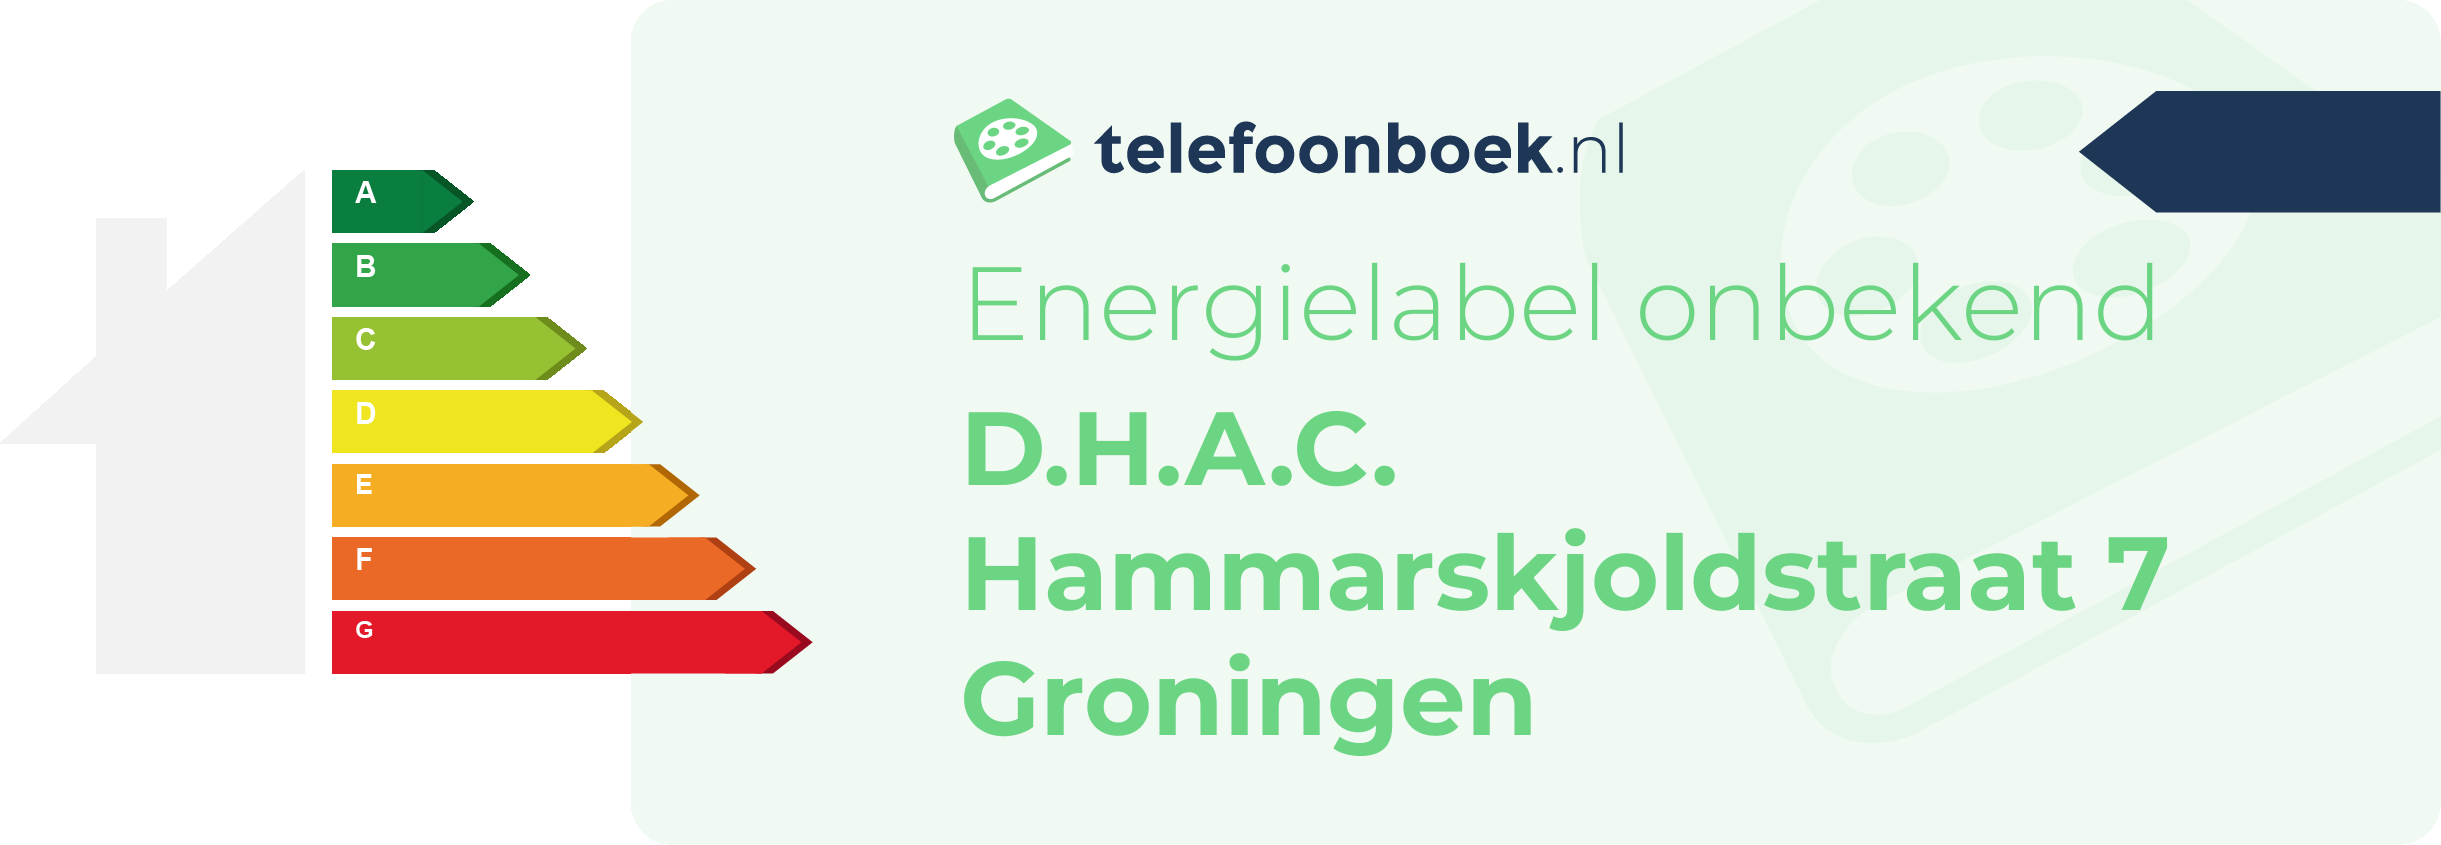 Energielabel D.H.A.C. Hammarskjoldstraat 7 Groningen